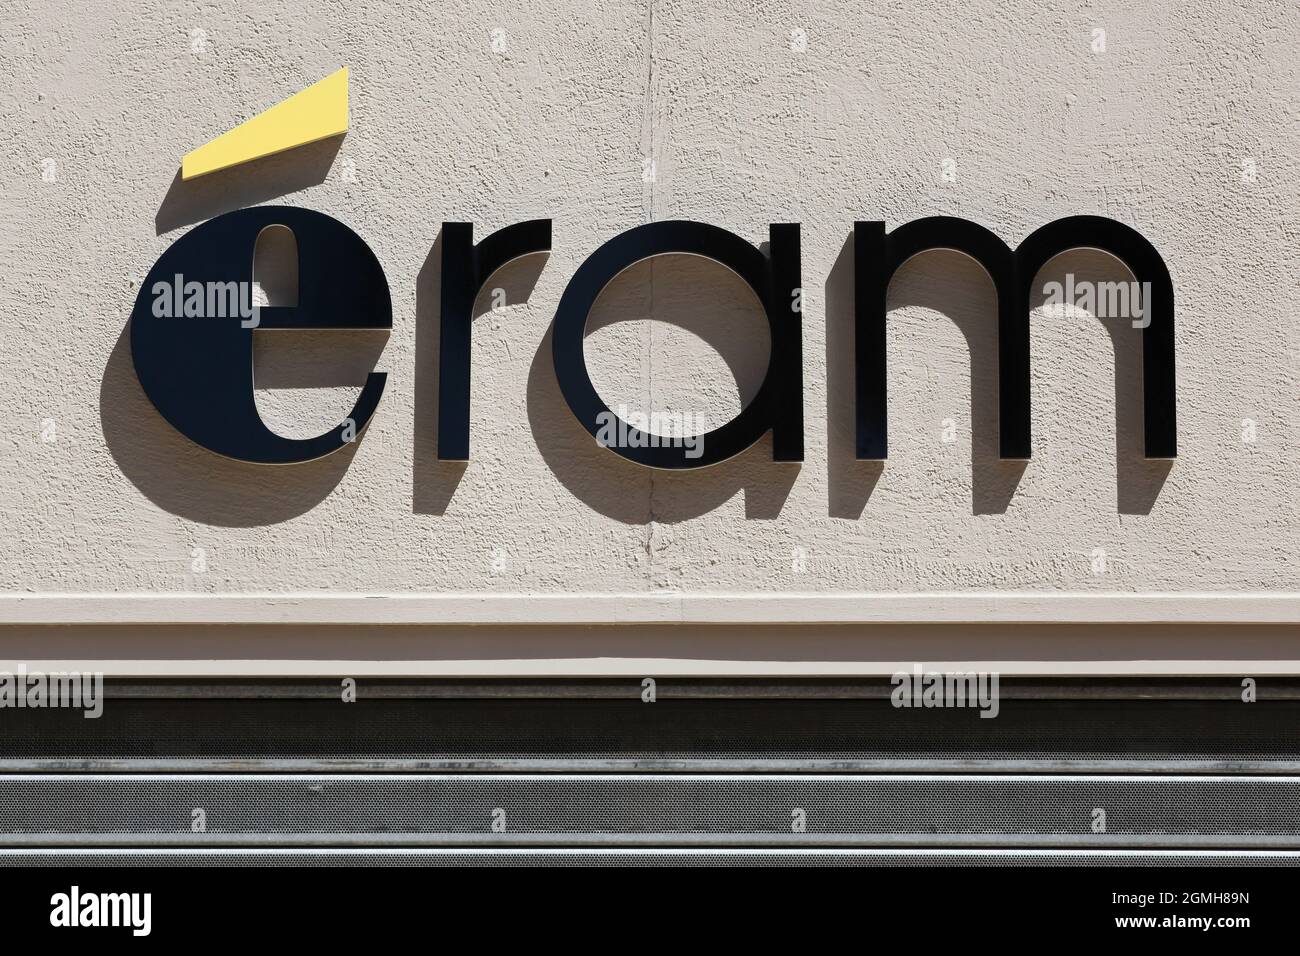 Villefranche, Frankreich - 17. Mai 2020: ERAM-Logo an der Wand. ERAM ist eine französische Marke und Einzelhandelskette, die sich auf Schuhe und Bekleidung spezialisiert hat Stockfoto